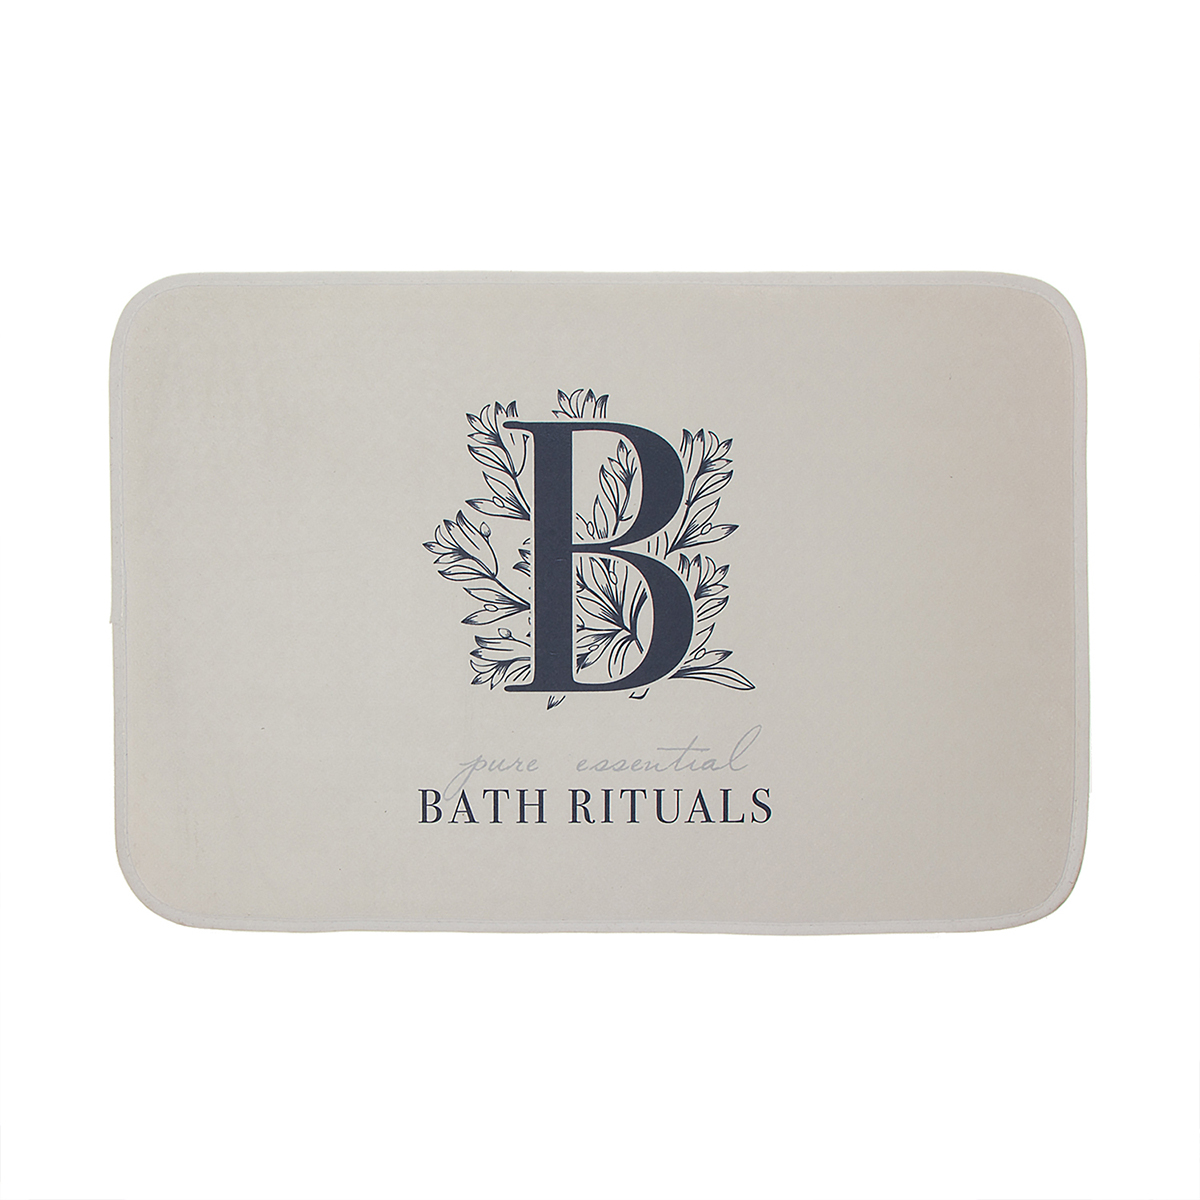    Bath Rituals